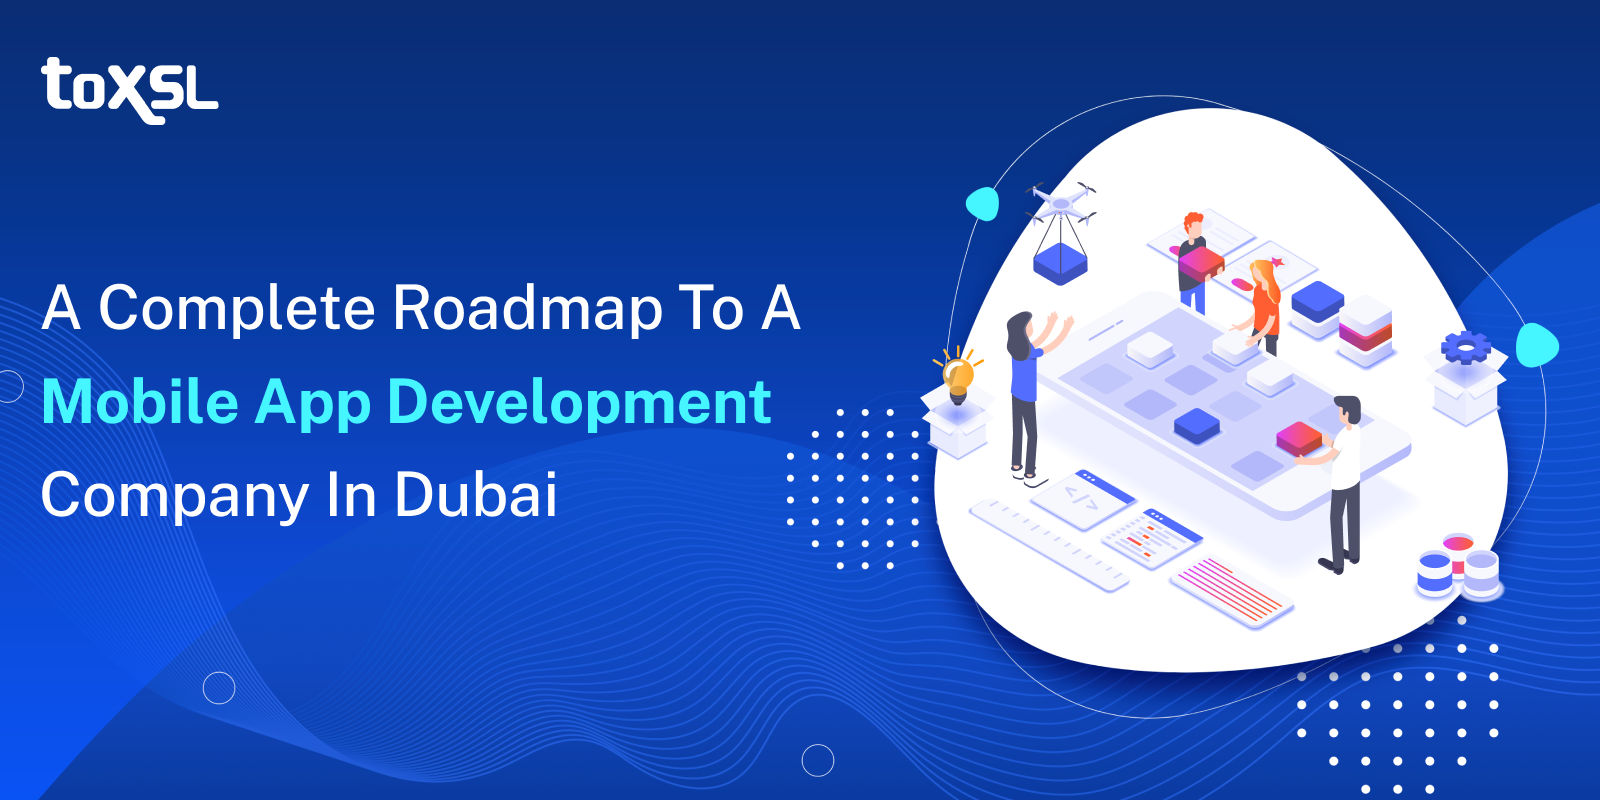 A Complete Roadmap to a Mobile App Development Company in Dubai